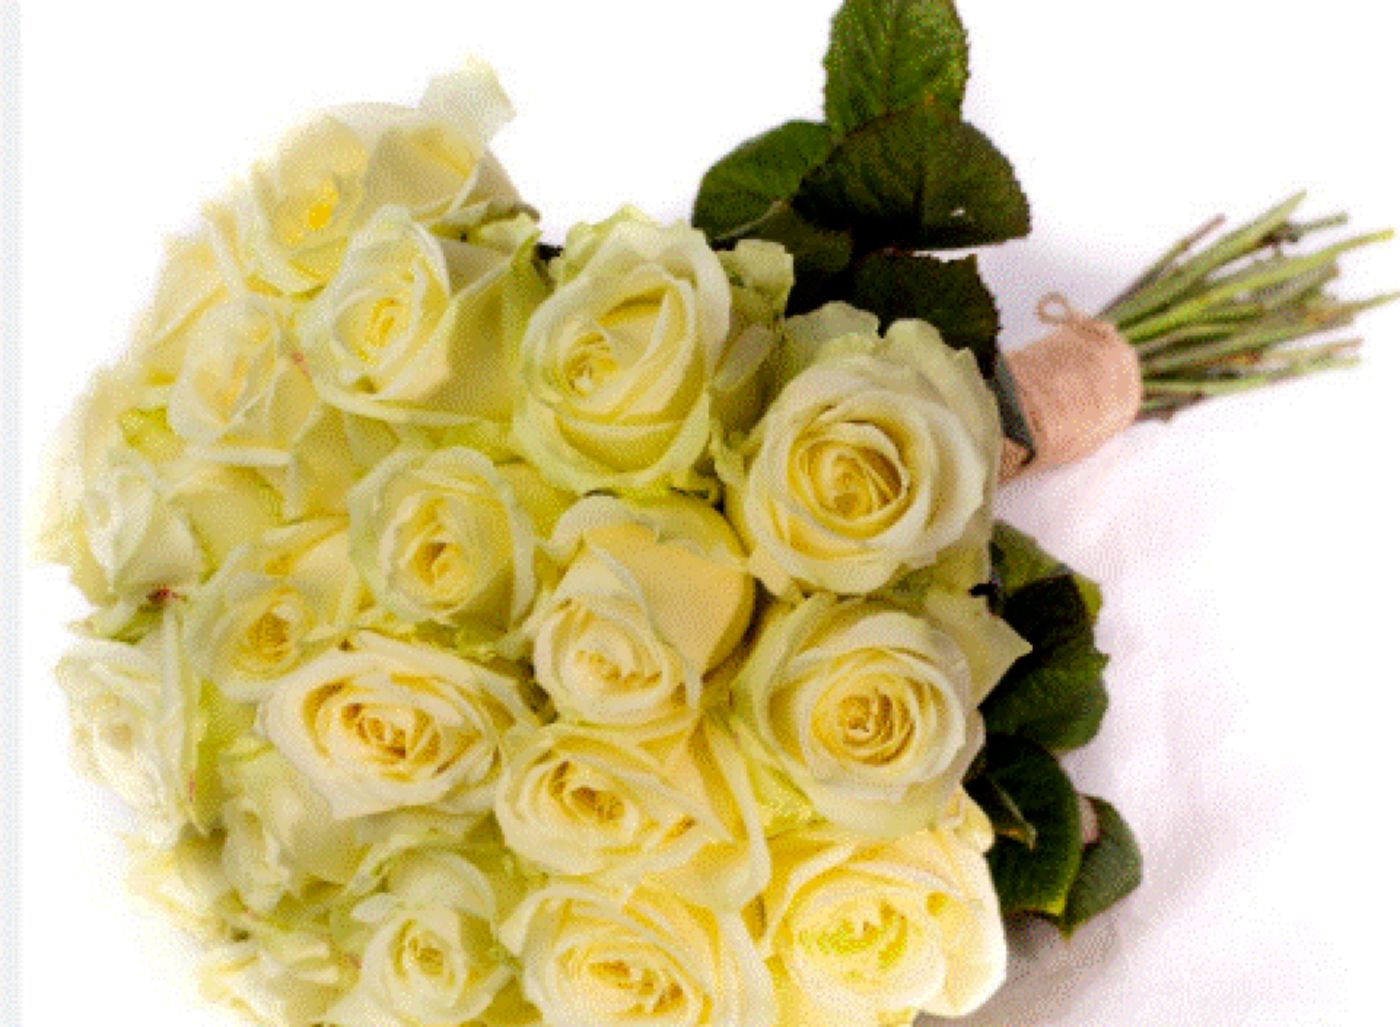 Nu dăruiți niciodată trandafiri albi de 1 martie. Iată de ce